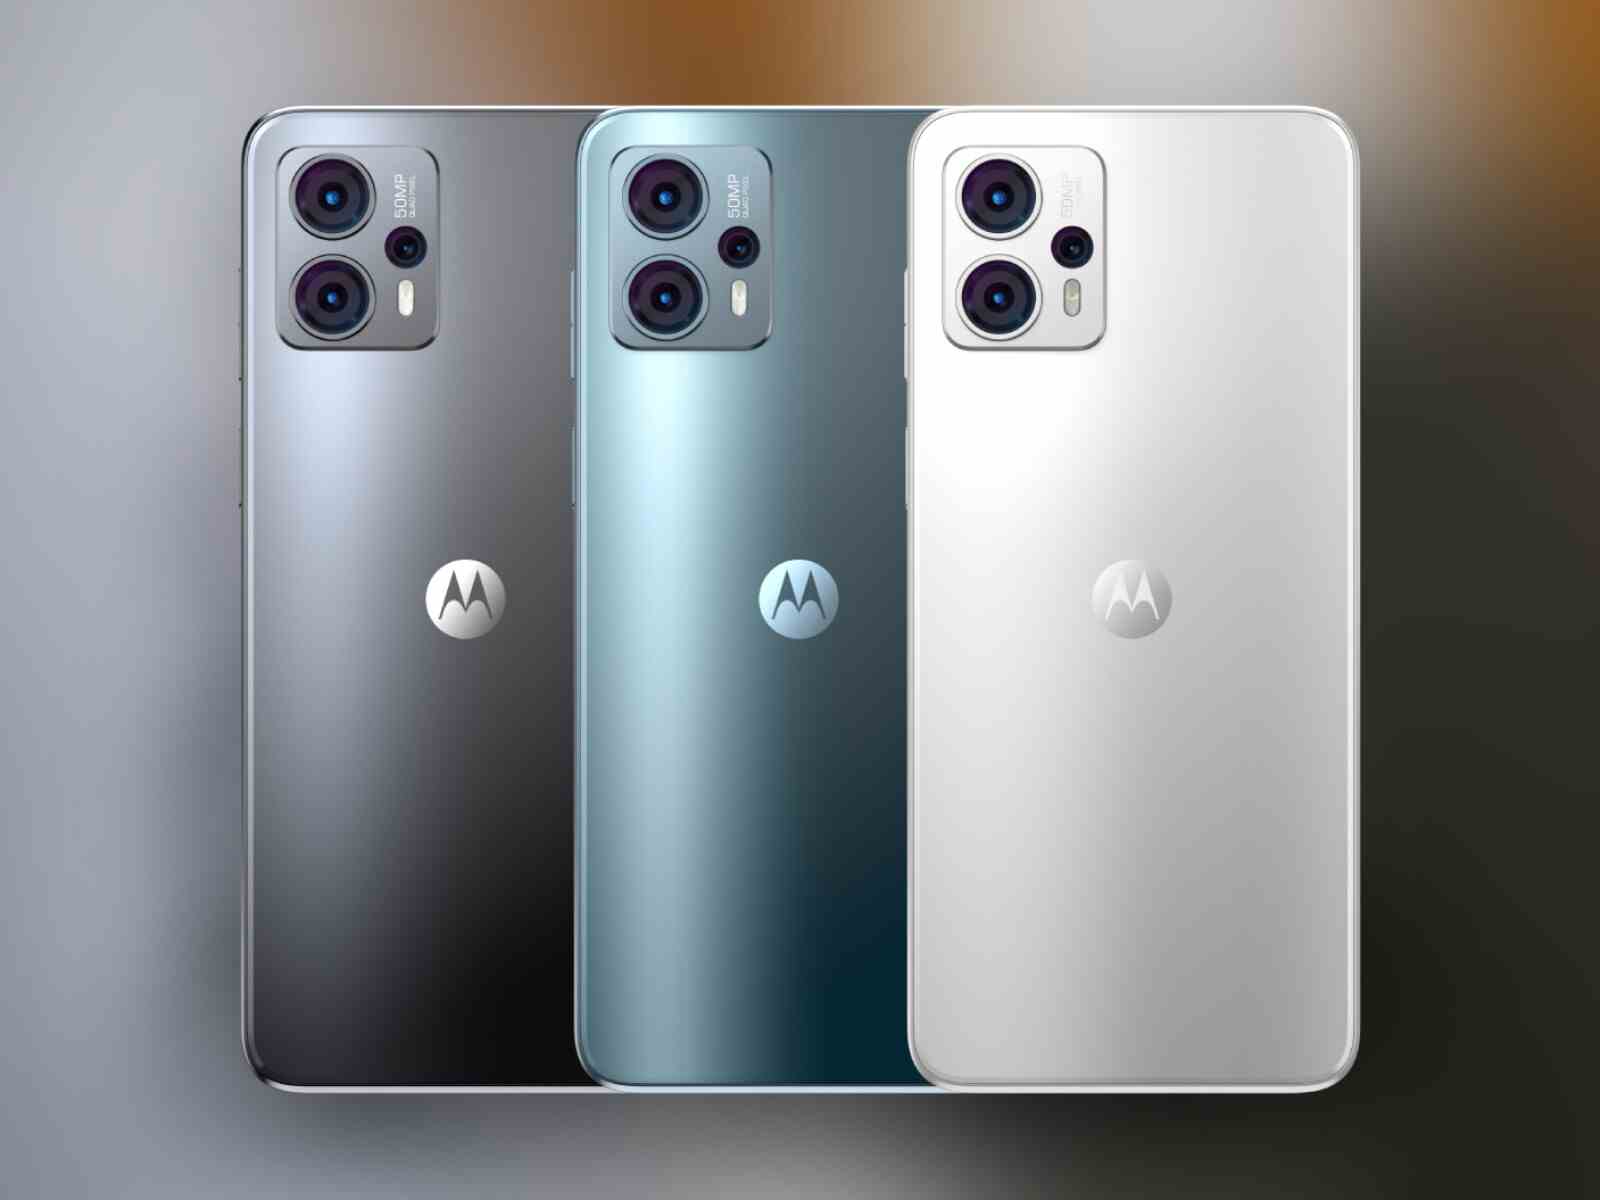 G23, Mat Kömür, Çelik Mavisi veya İnci Beyazı renklerinde sunulur.  - Moto G13 ve Moto G23 ile tanışın: Motorola'nın en yeni ekonomik telefonları